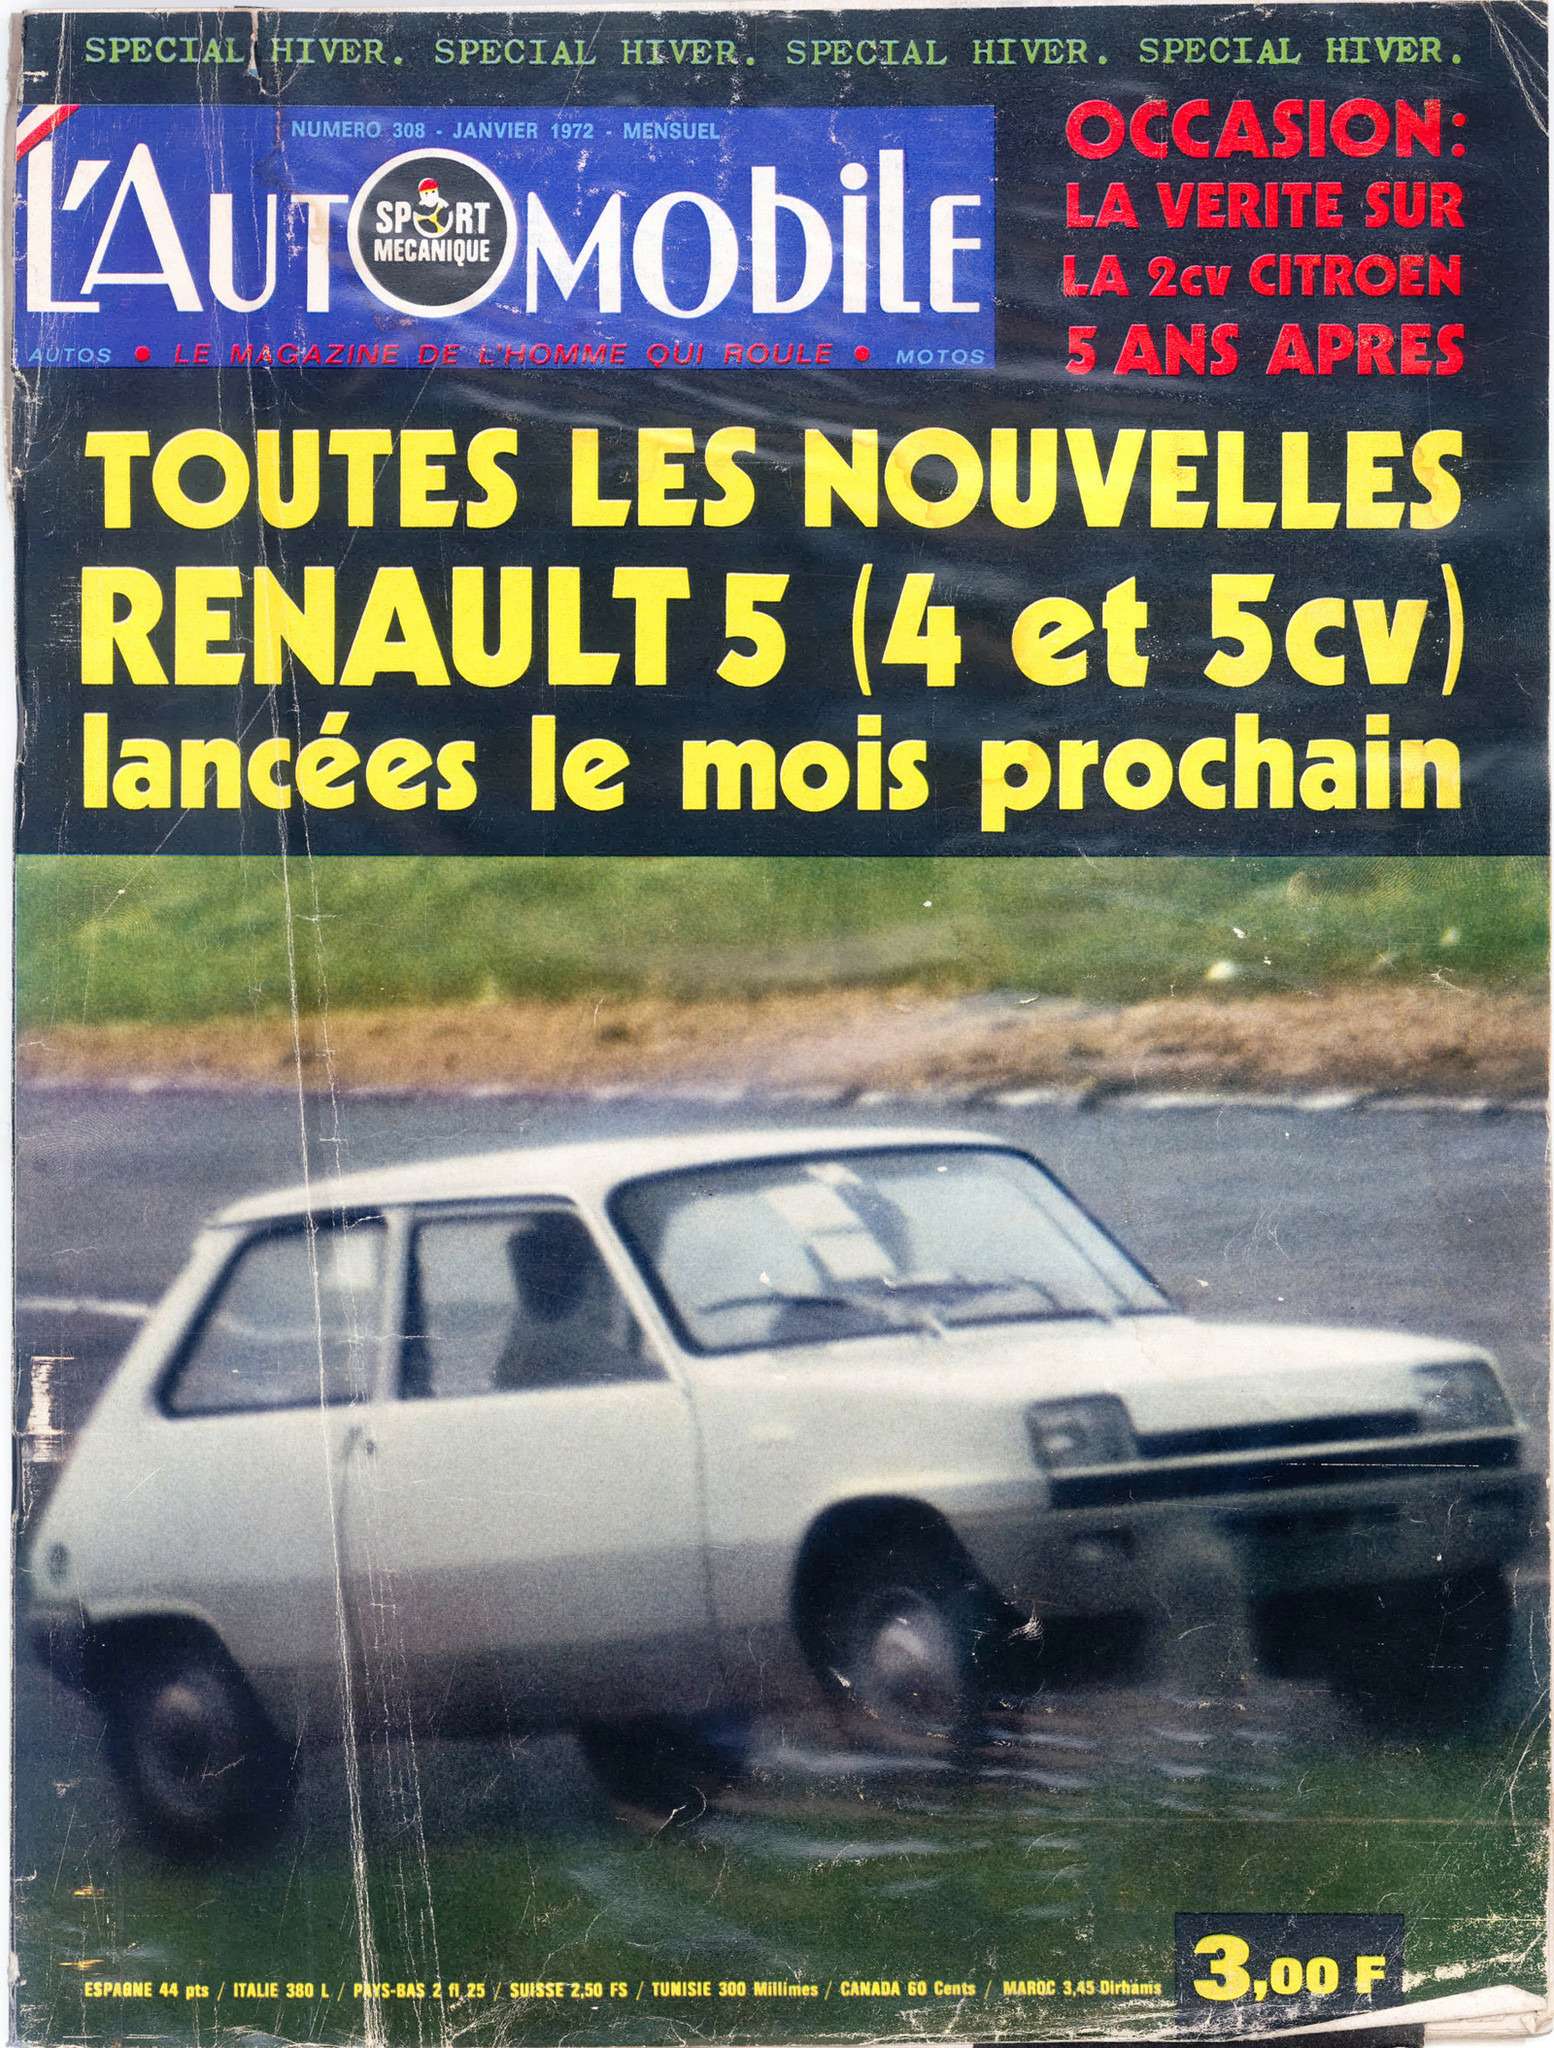 77-Renault-old_zr-01_16